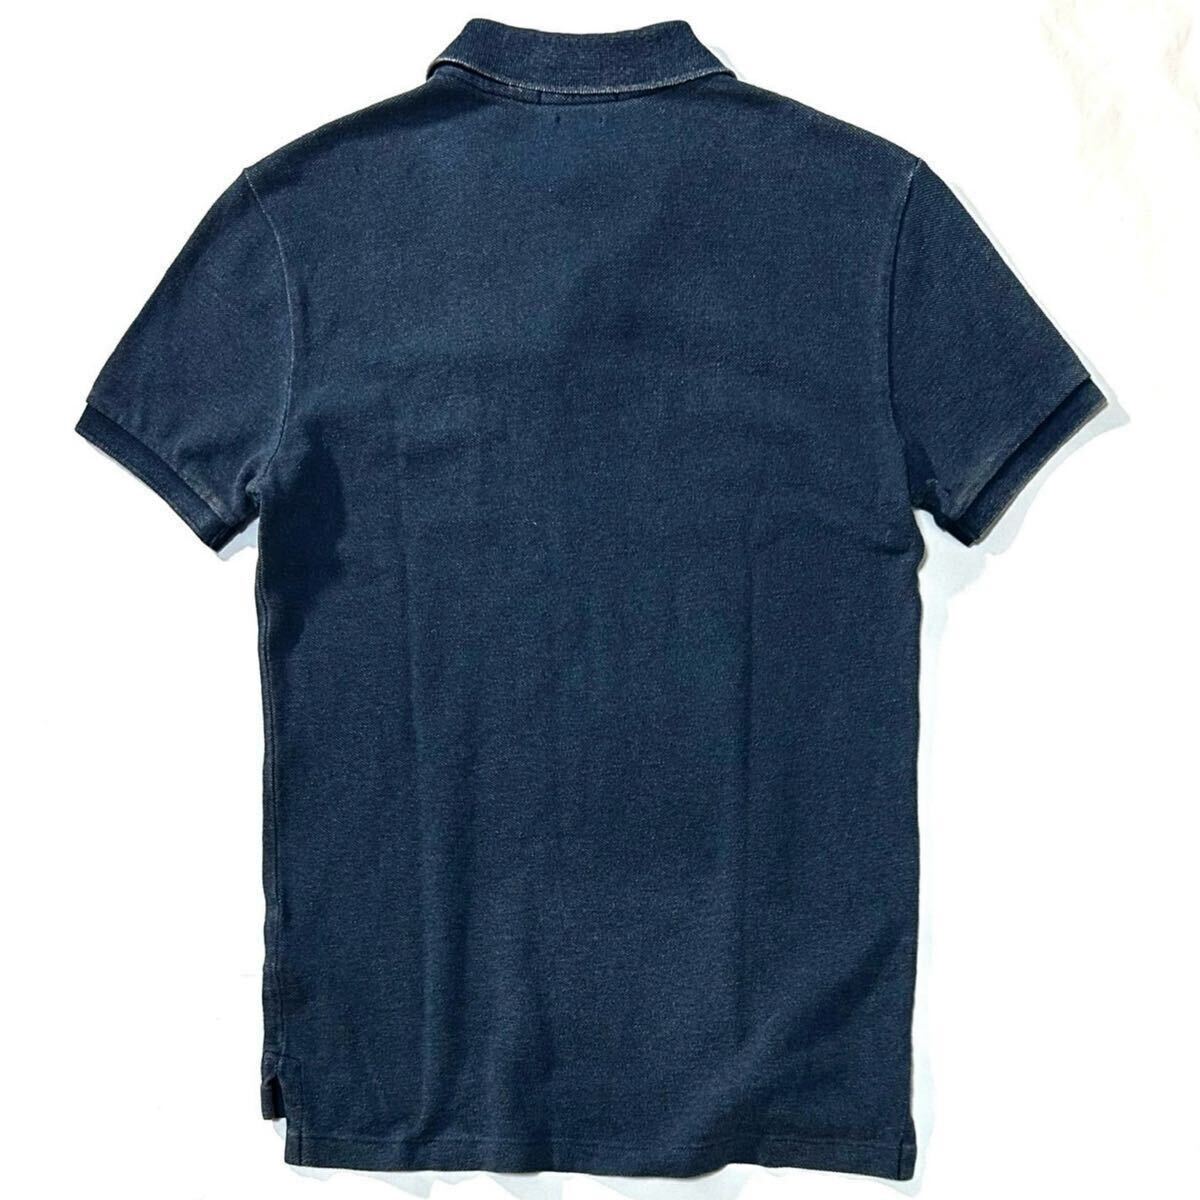 【POLO RALPH LAUREN】小慣れ感たっぷりな藍染め鹿の子ポロ◎!!ラルフローレン 定価1.9万 インディゴ染め鹿の子ポロシャツ 刺繍 半袖シャツの画像8